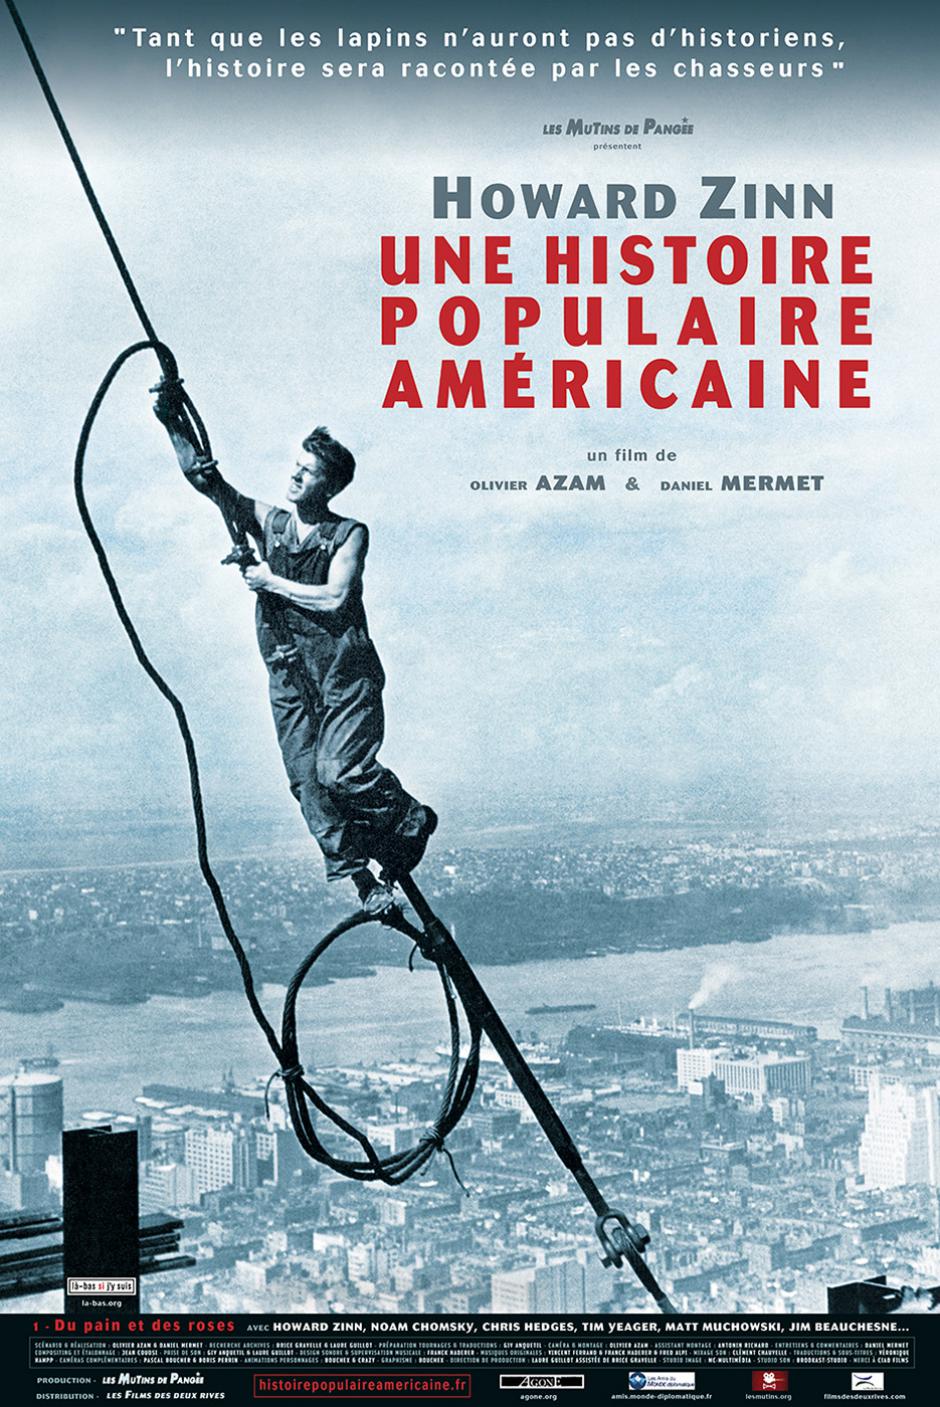 «Howard Zinn une histoire populaire américaine» au «32! Ciné» le samedi 7 novembre 2015 à 18h00